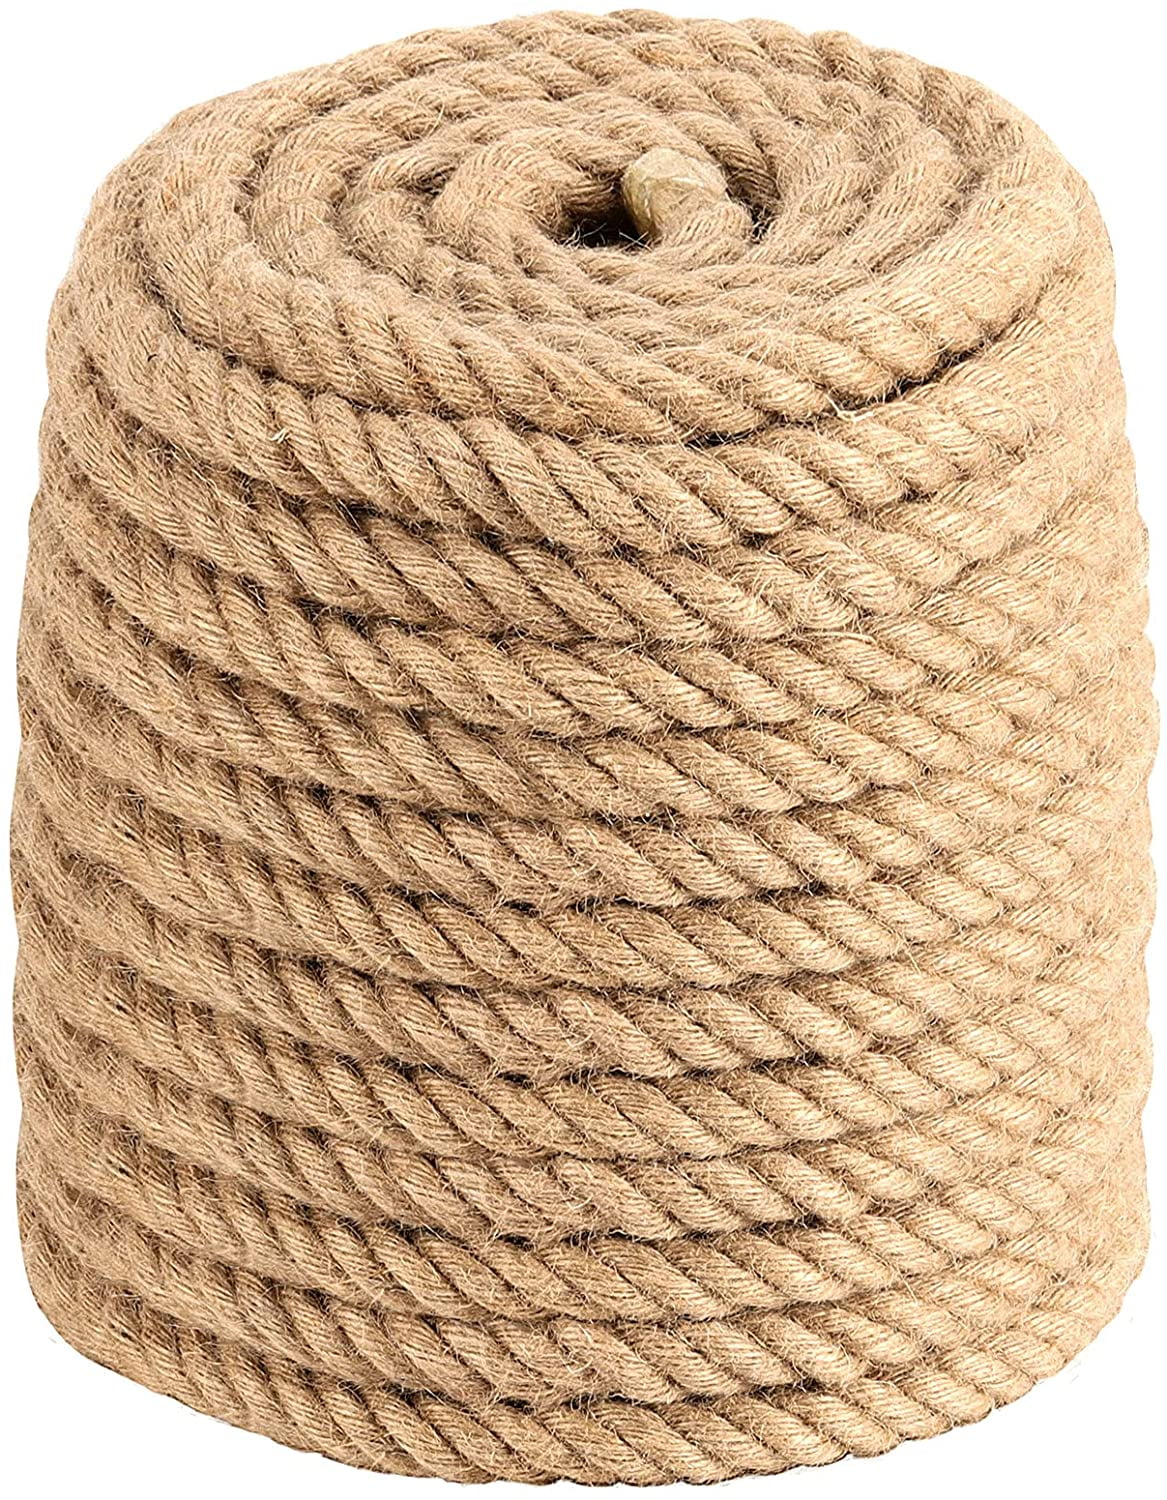 LYRWISHJD Hand-Woven Hemp Rope Nets 6mm Thick Jute Rope